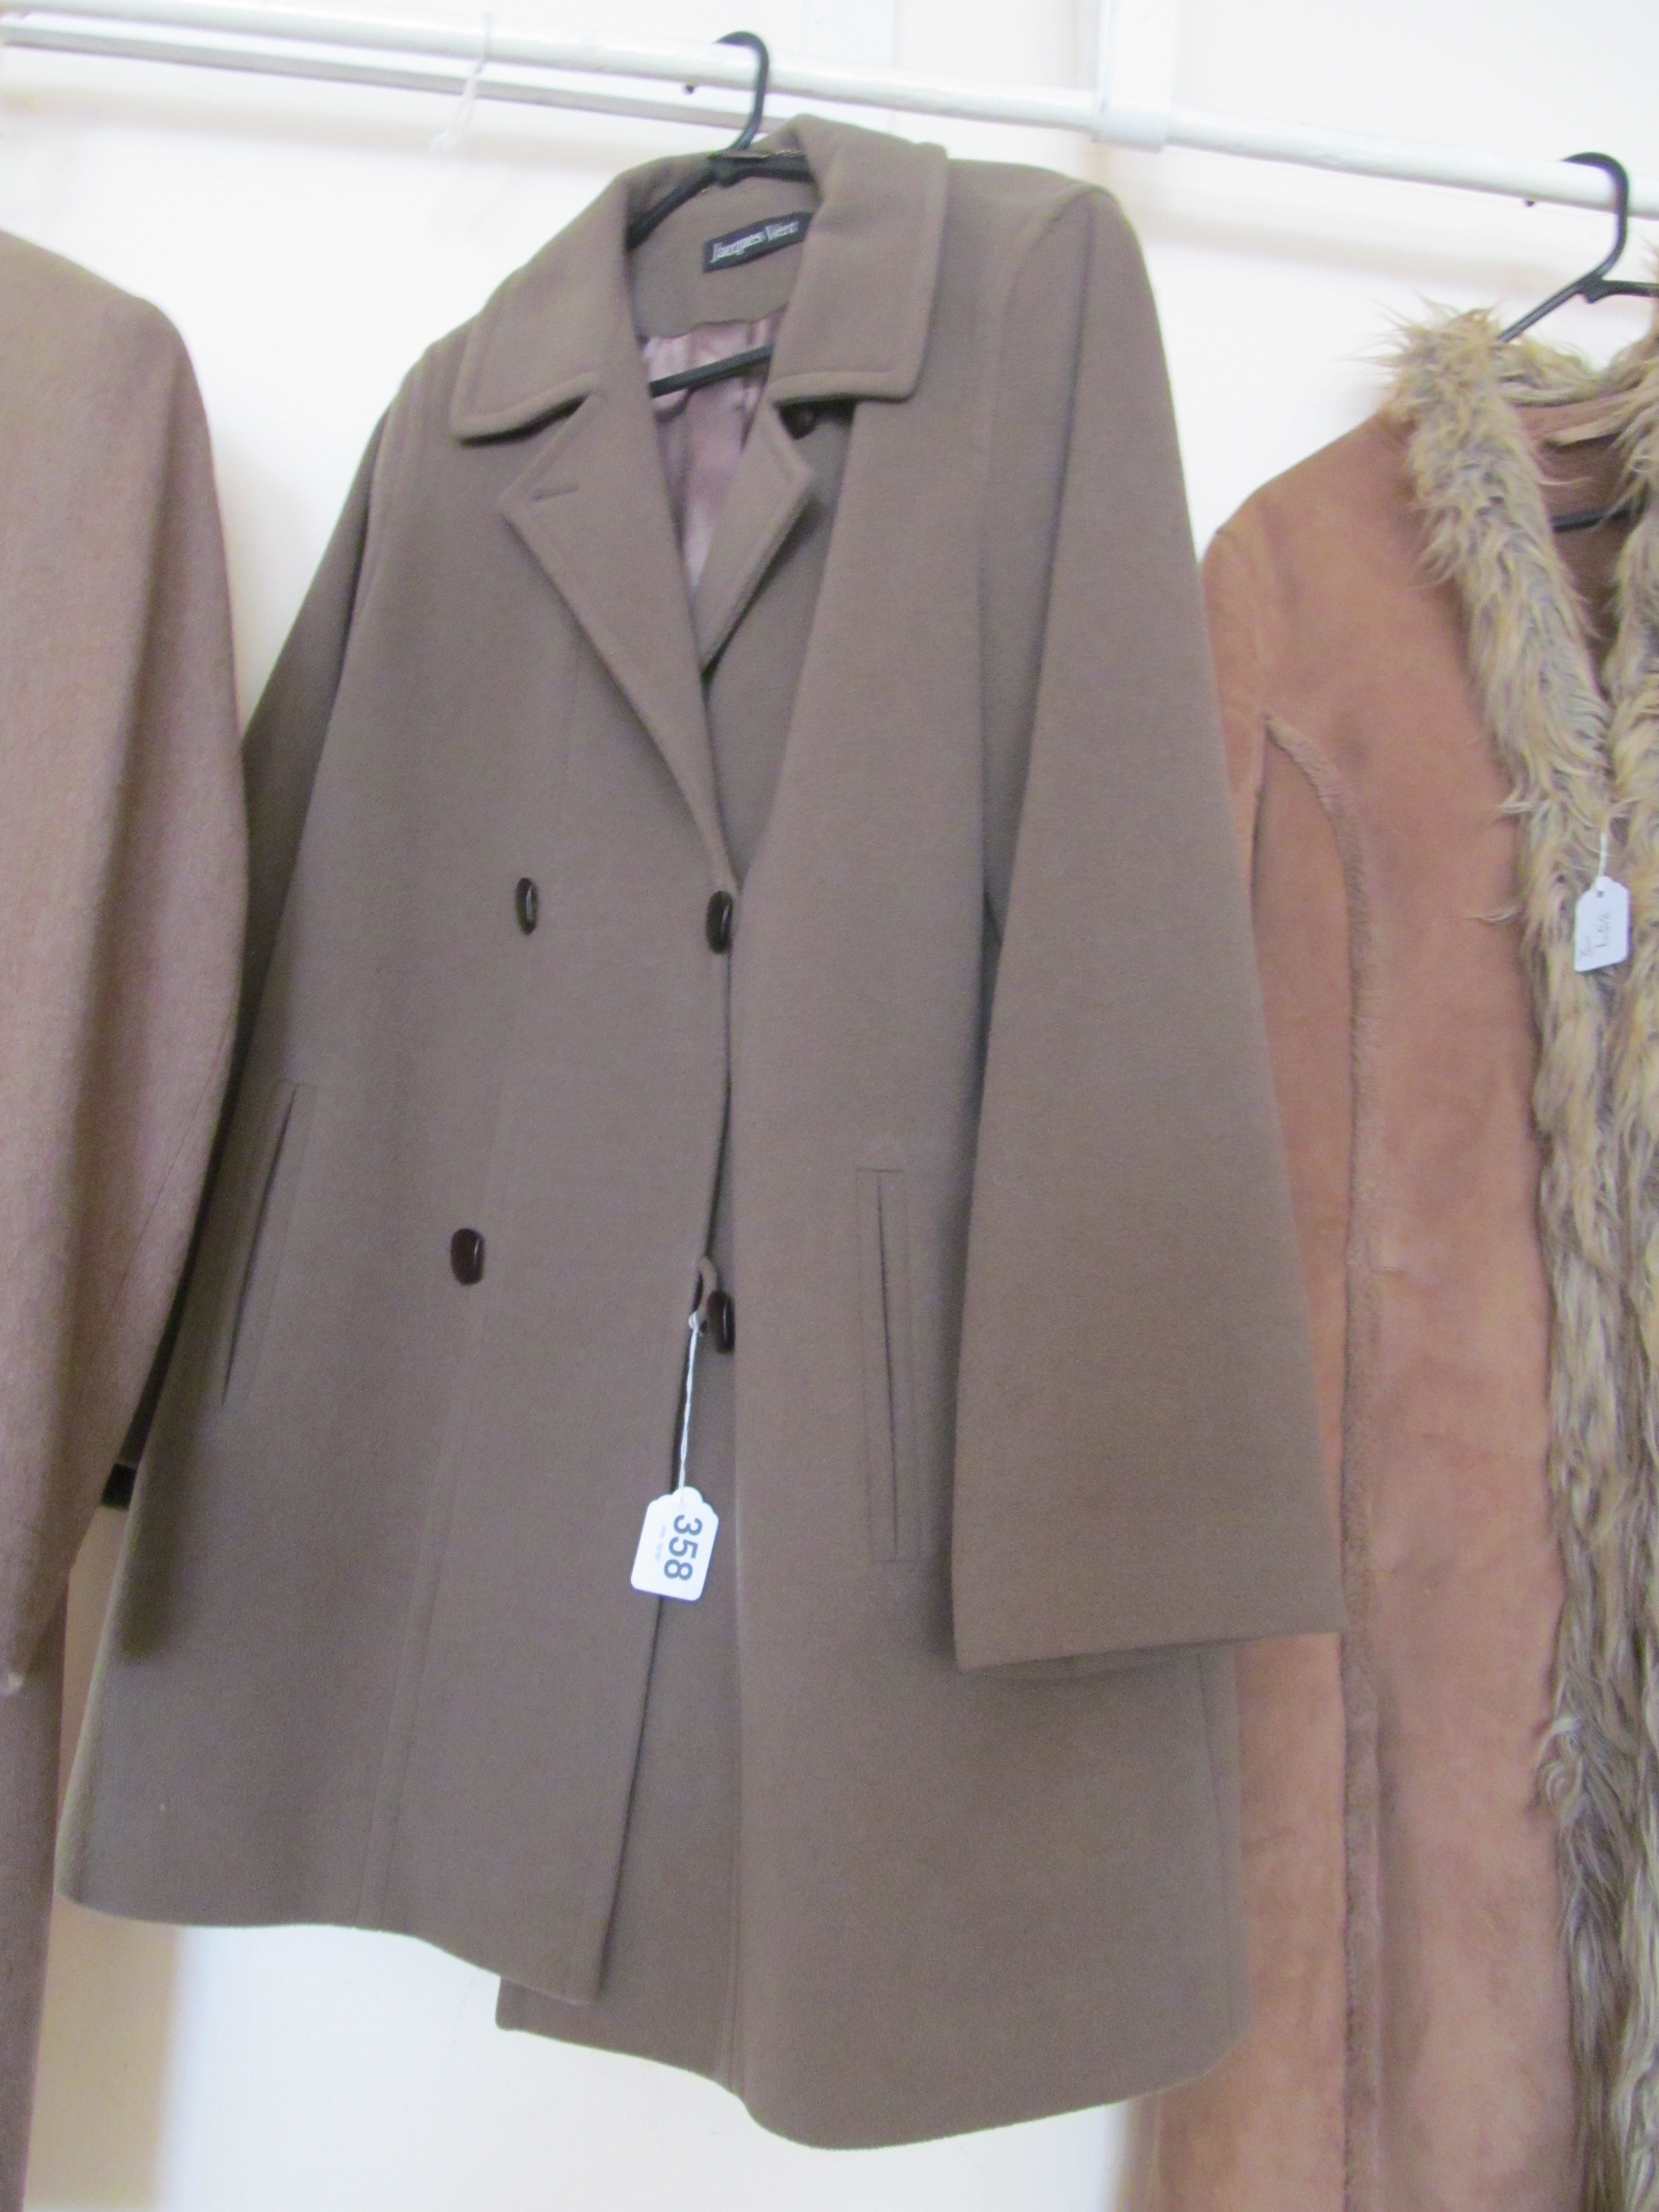 A Jacques Vert coat